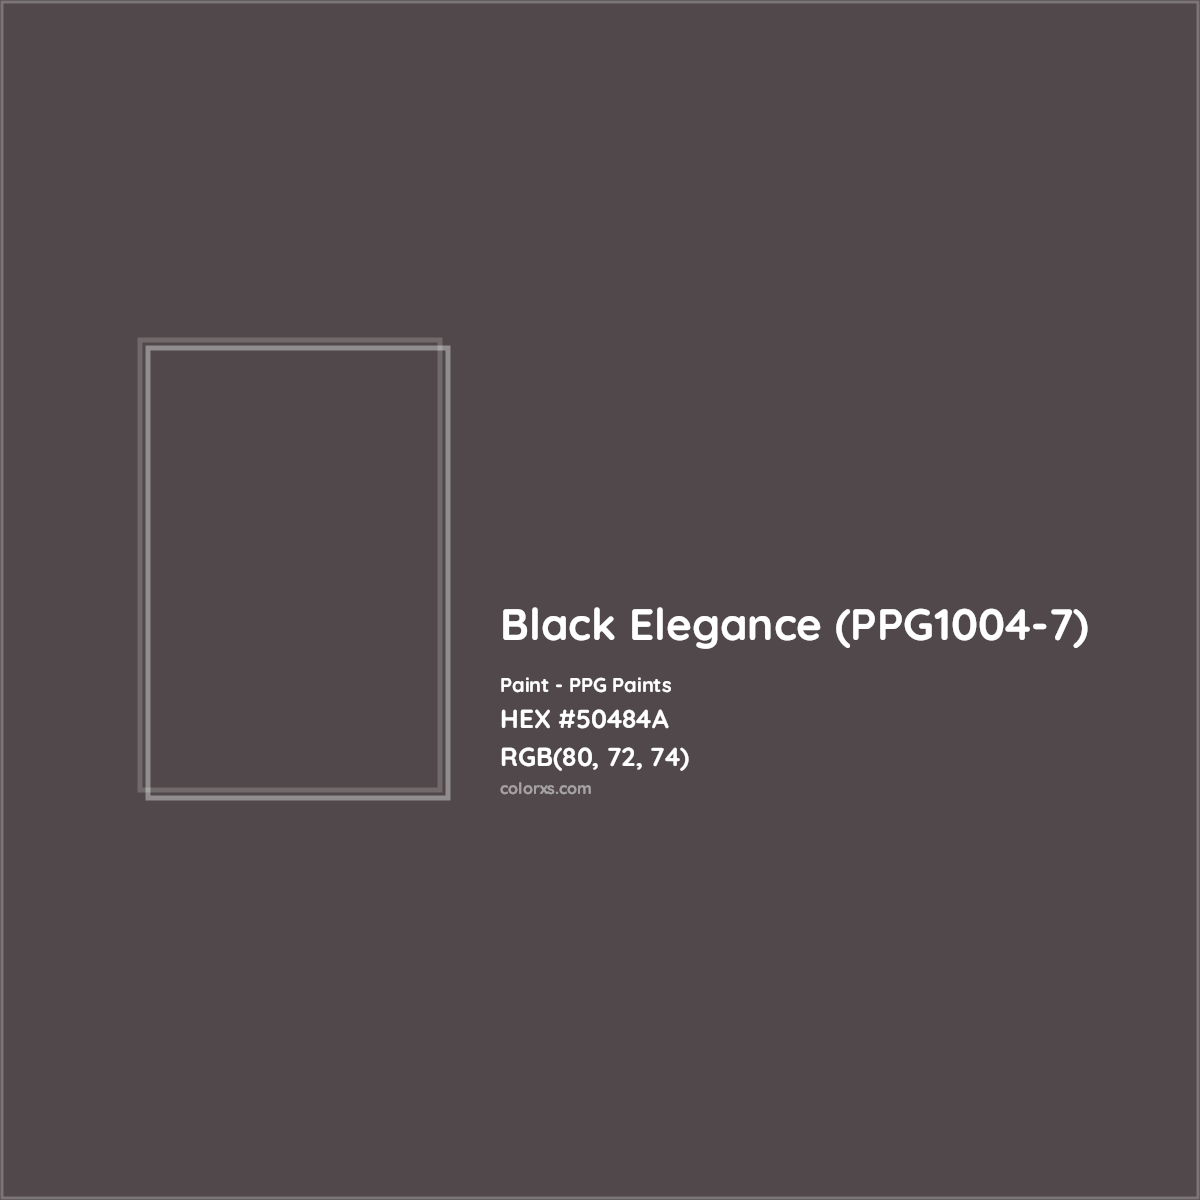 HEX #50484A Black Elegance (PPG1004-7) Paint PPG Paints - Color Code